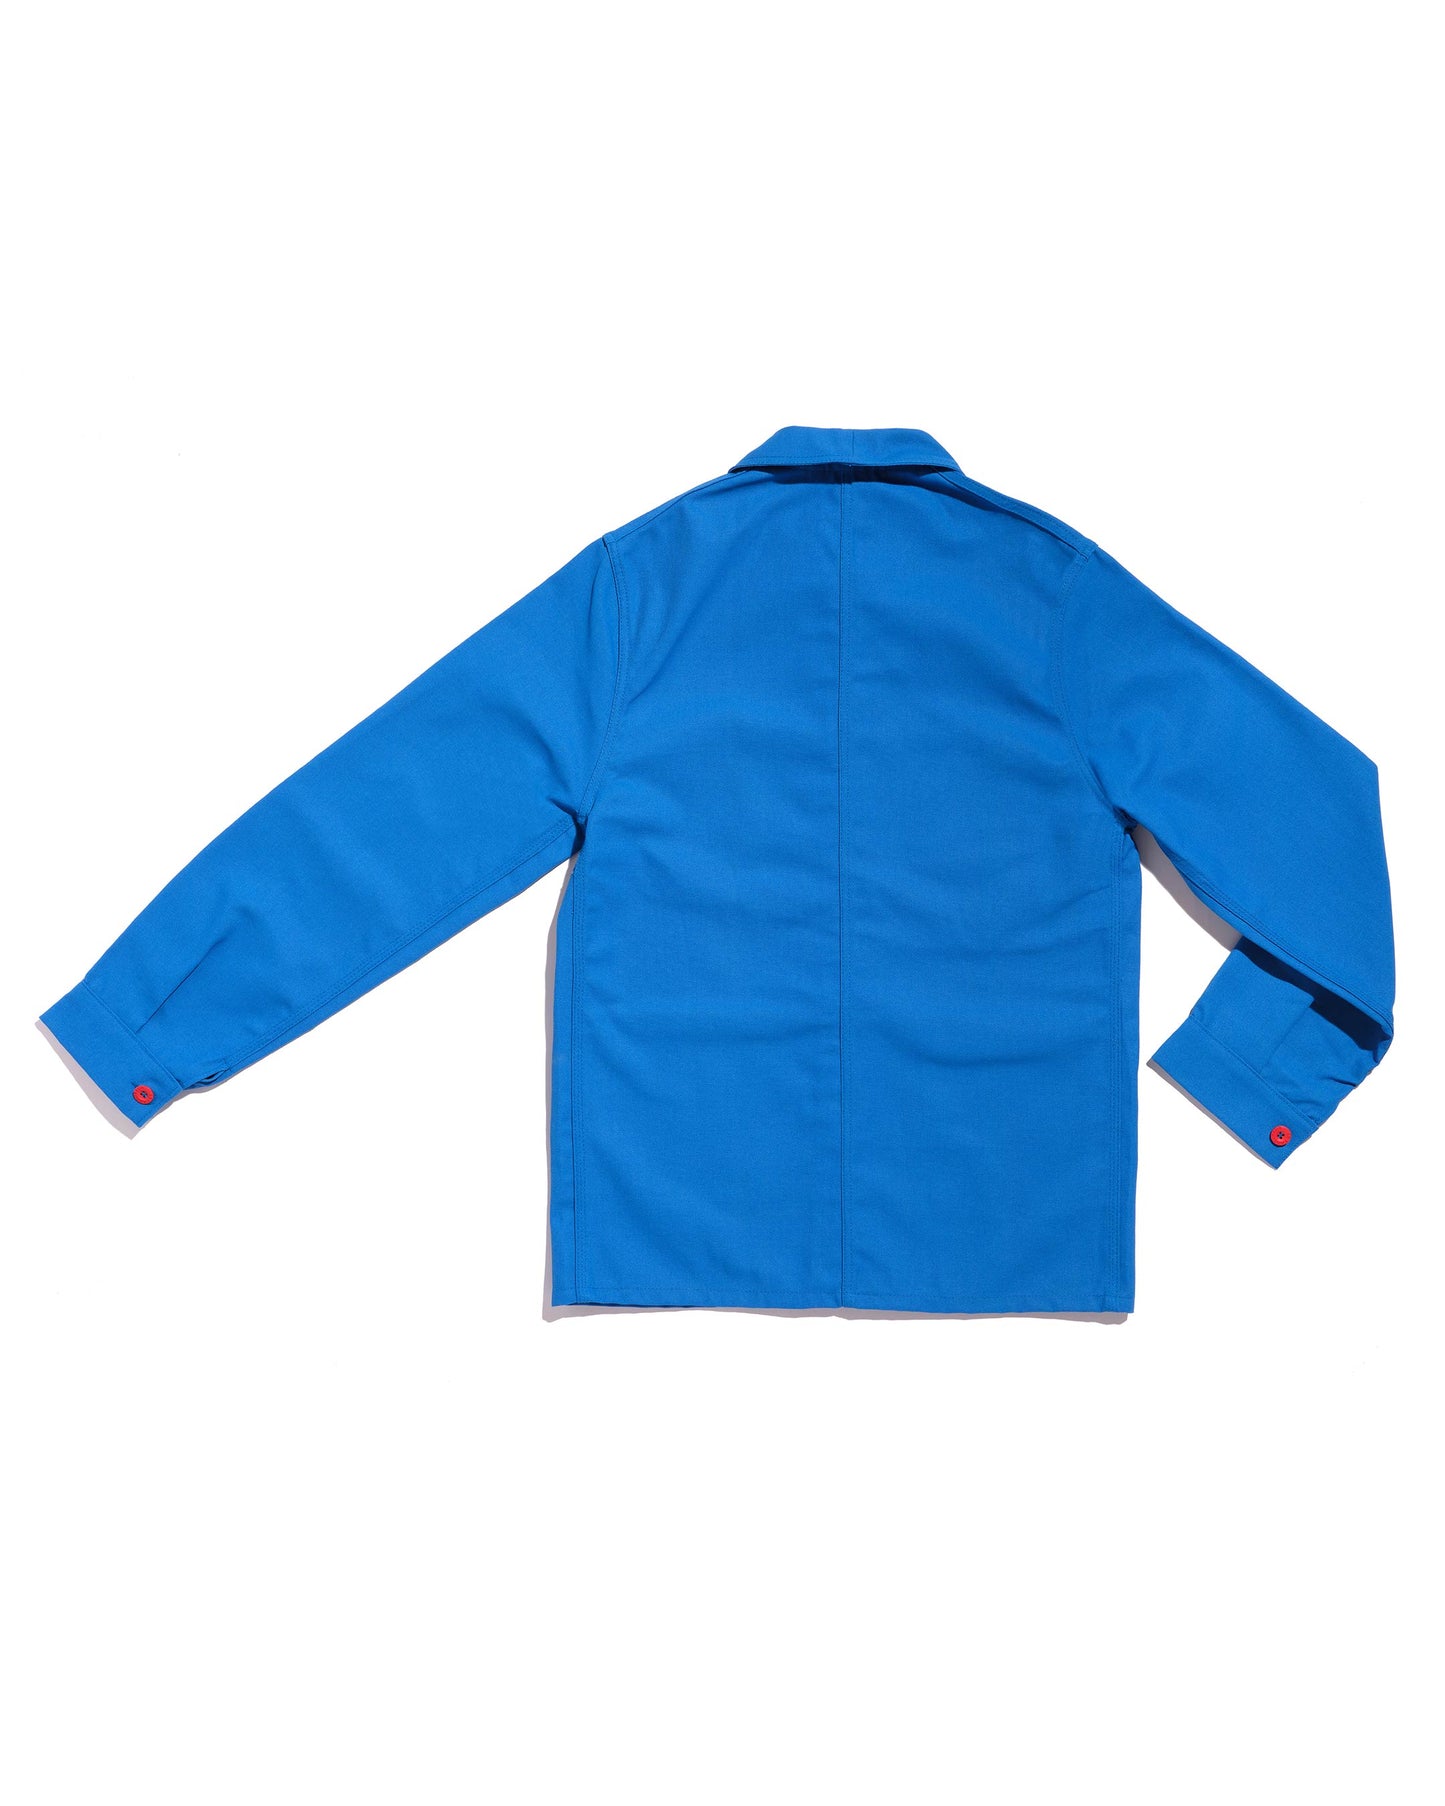 Le Laboureur azure blue work jacket